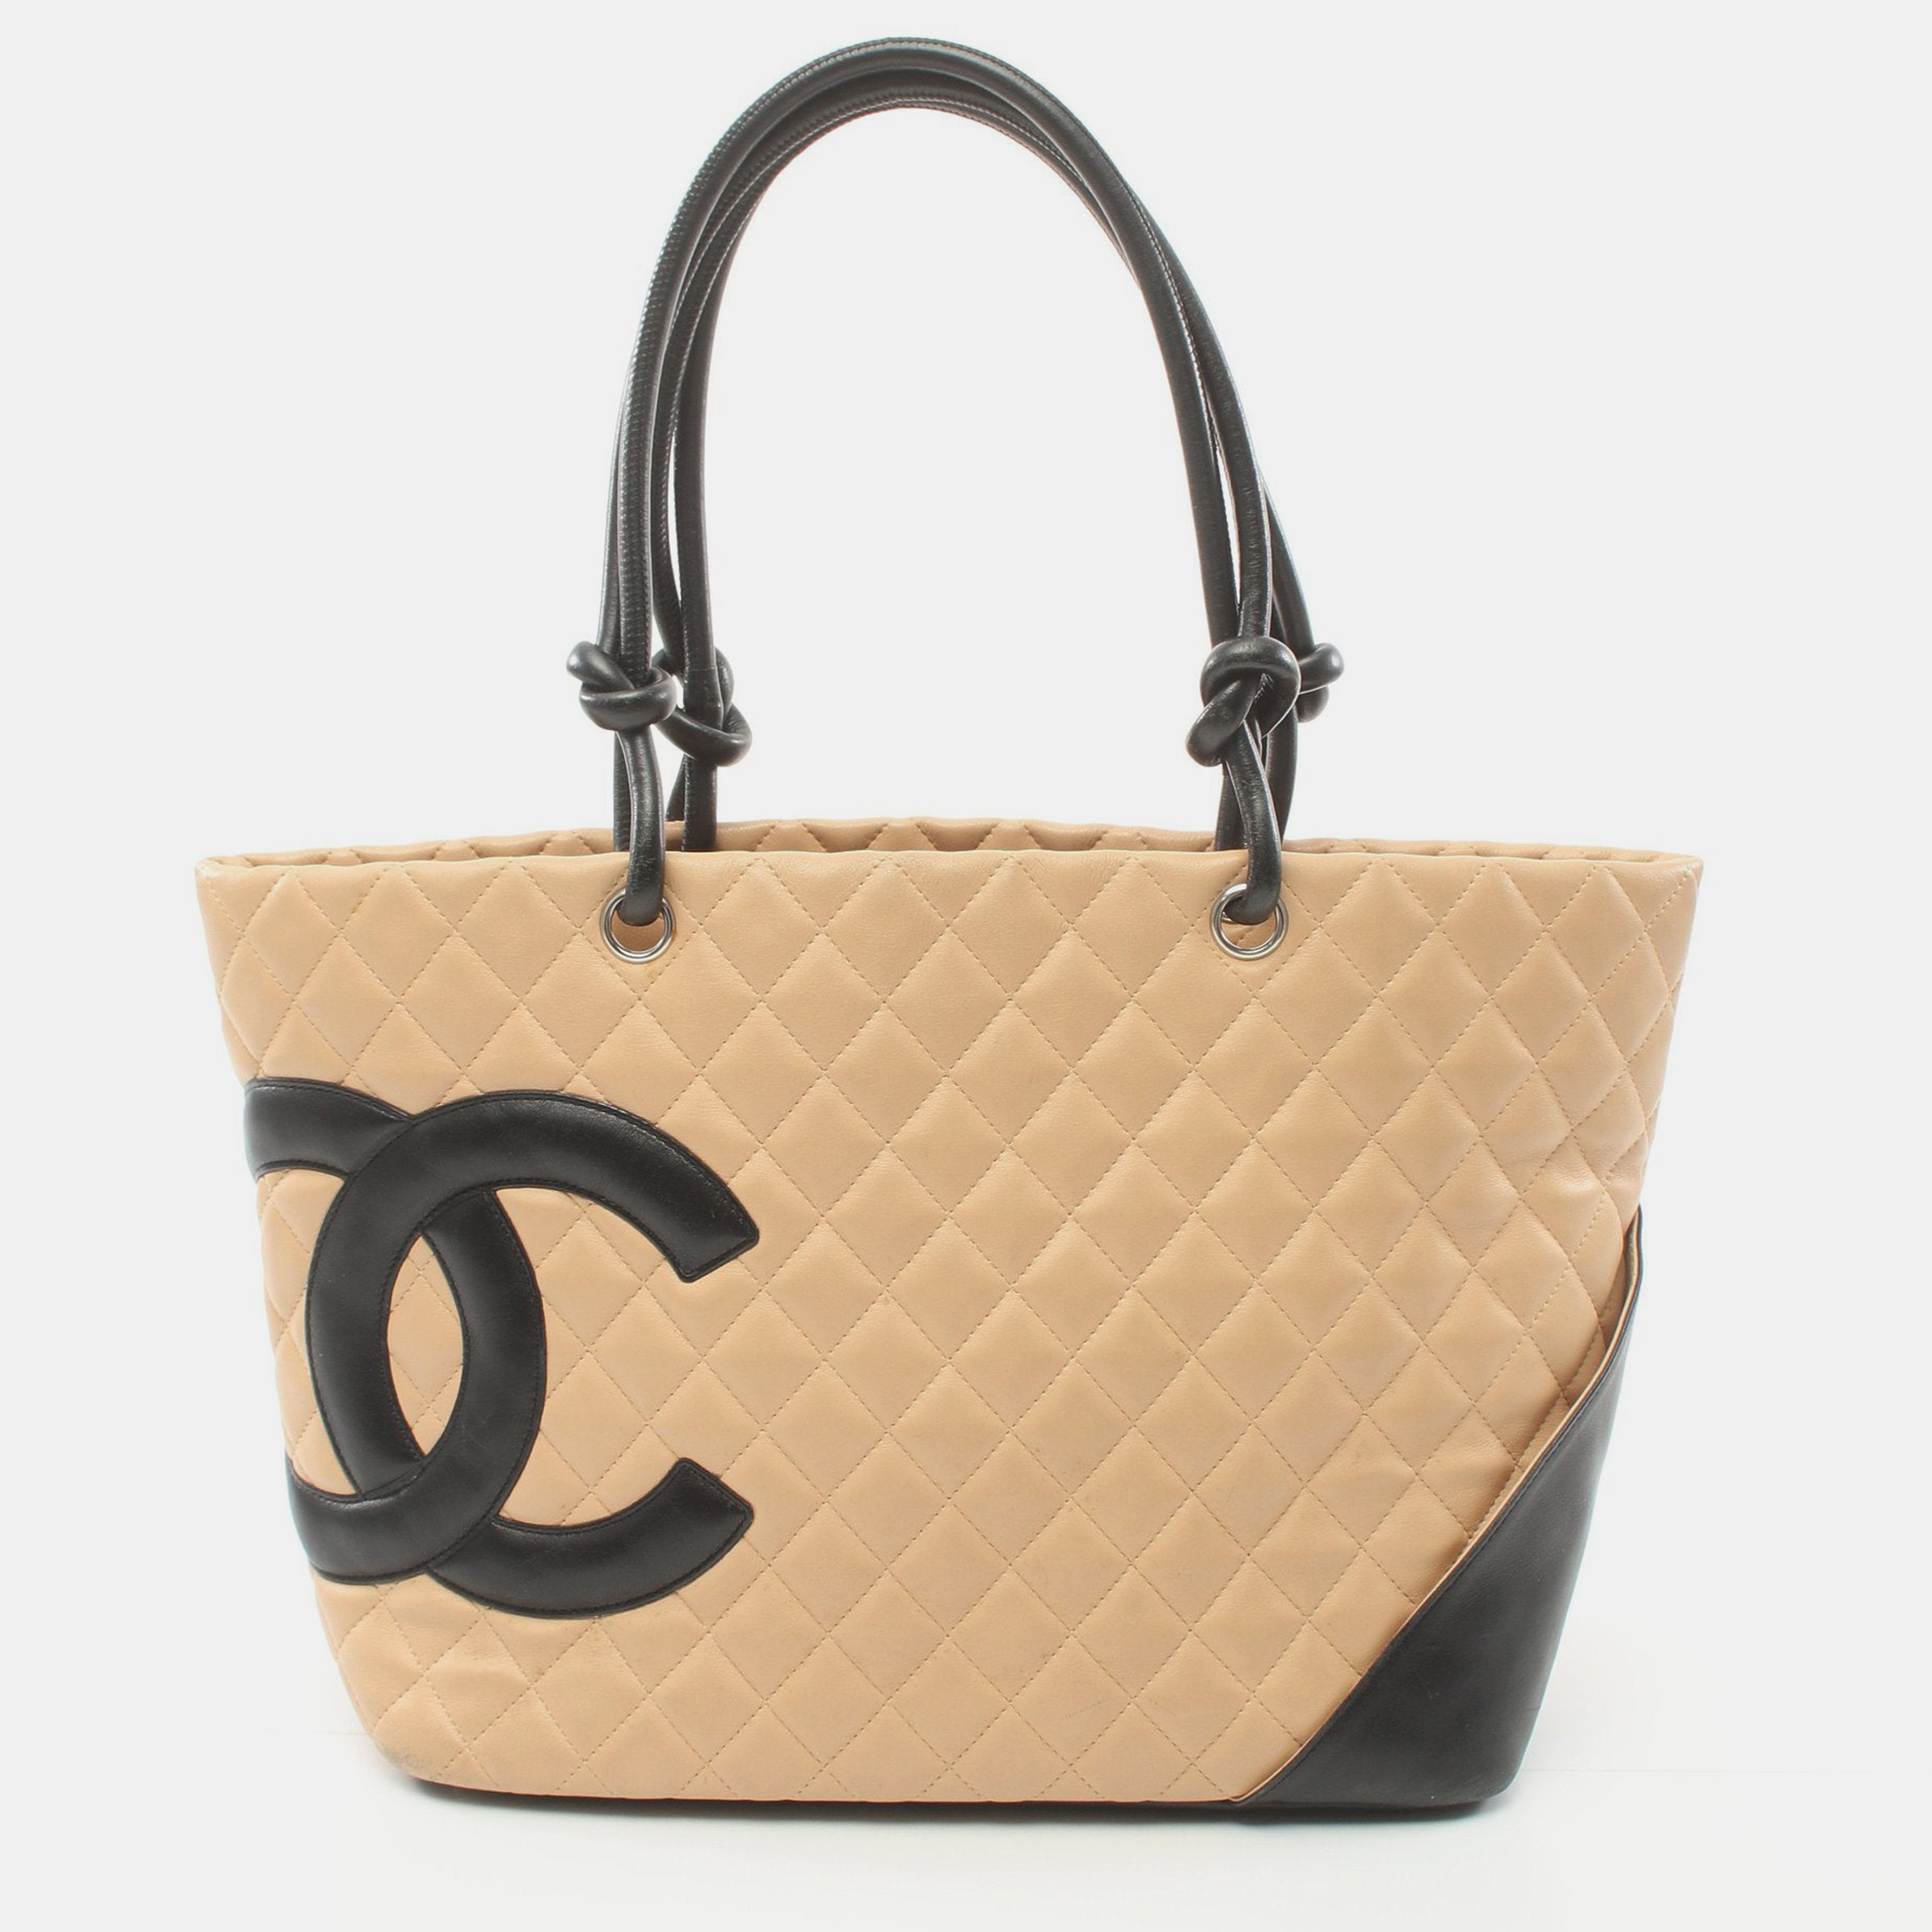 Chanel cambon line large shoulder bag tote bag leather beige black silver hardware